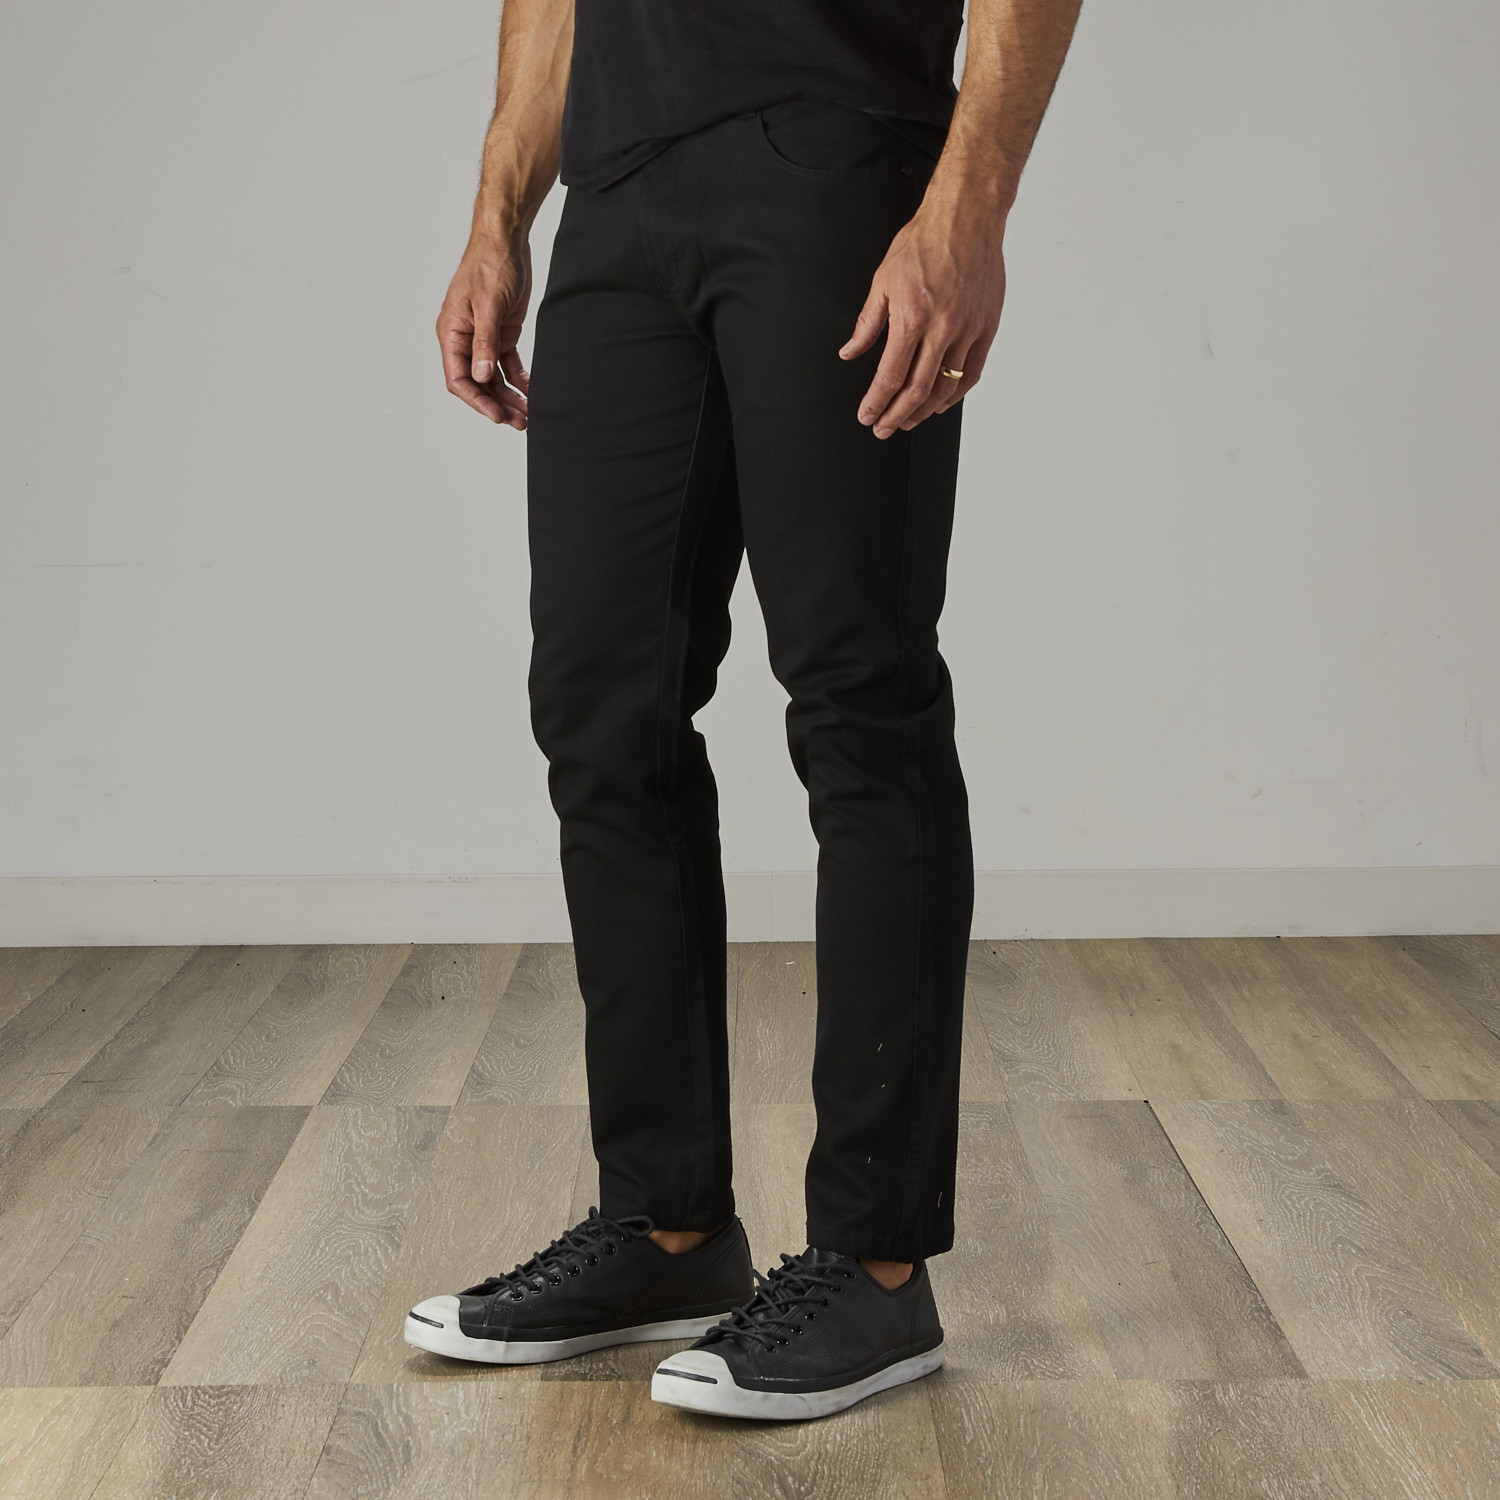 Men's Jean Cut Slim Fit Pants // Black (36WX30L) - Xray Jeans - Touch ...